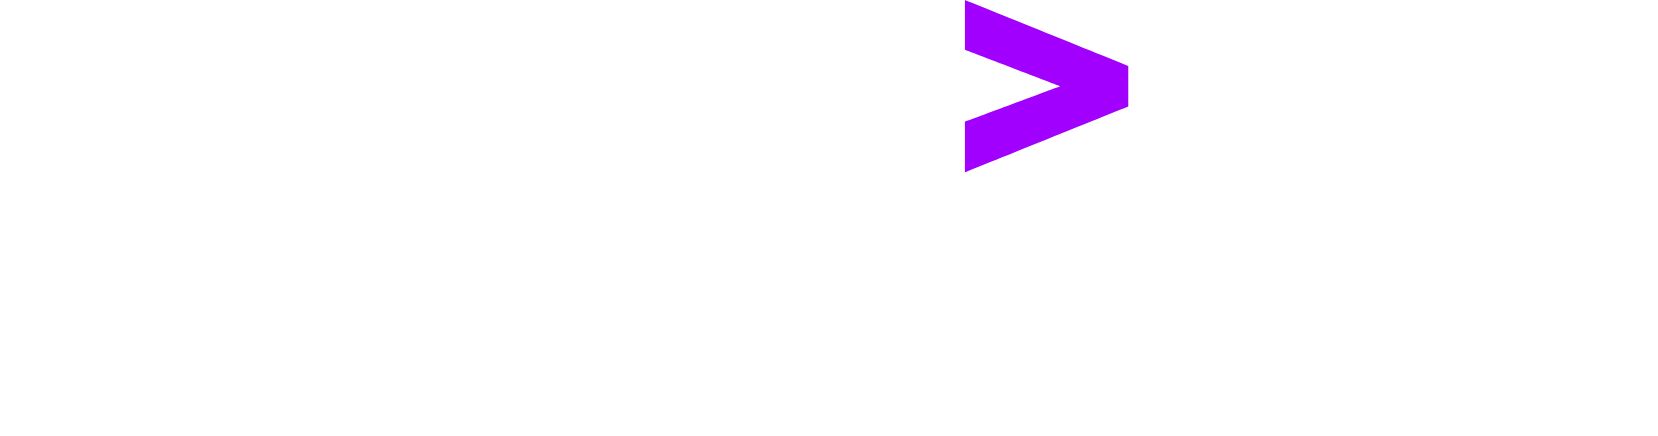 Accenture logo grand pour les fonds sombres (PNG transparent)